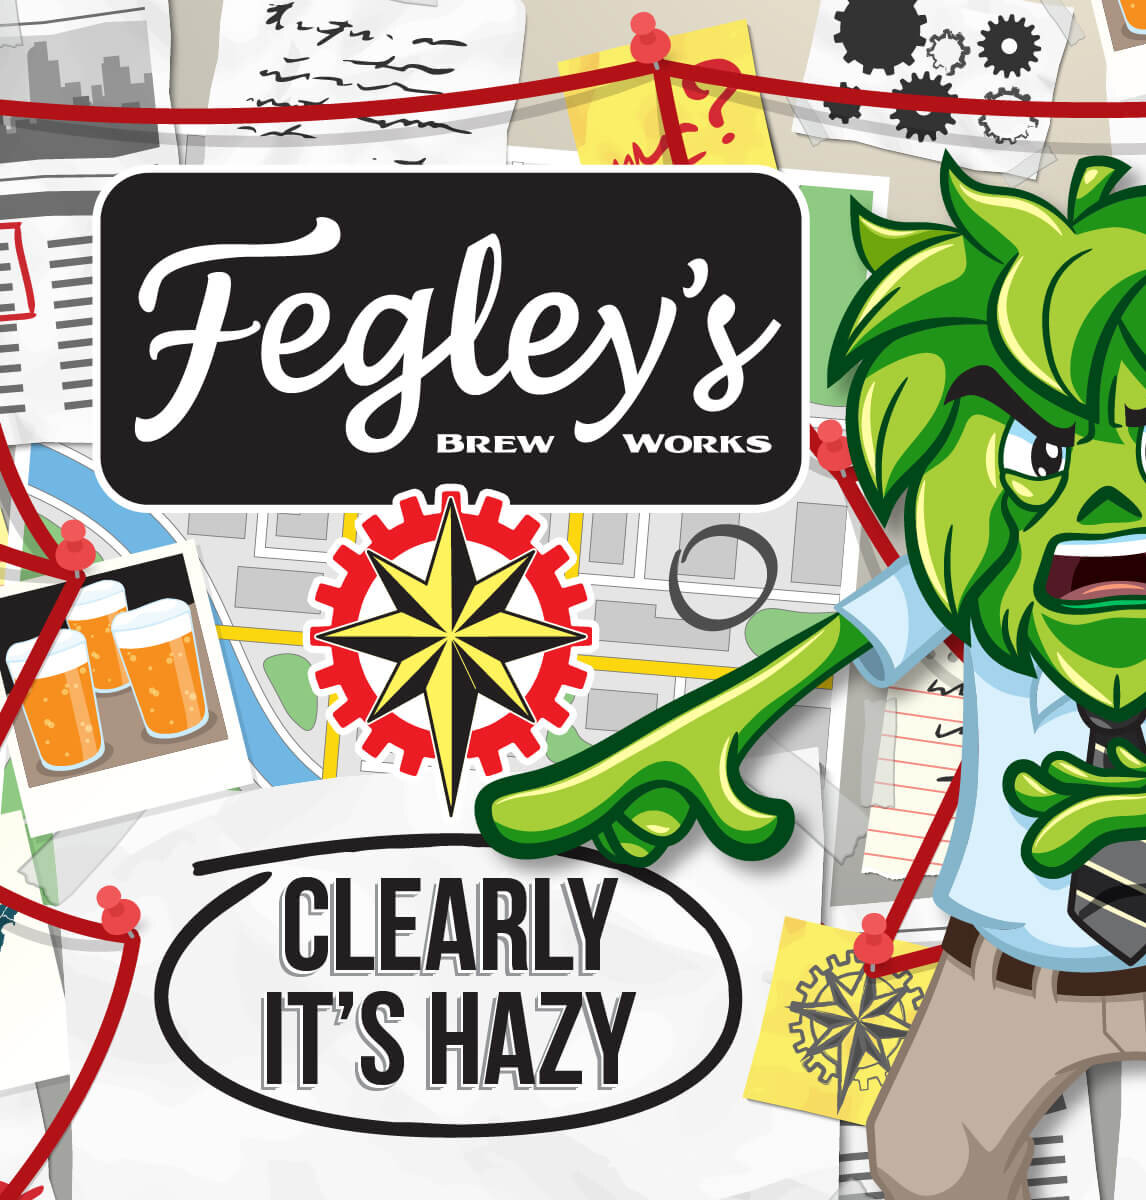 Fegley's Brew Works Clearly It's Hazy IPA